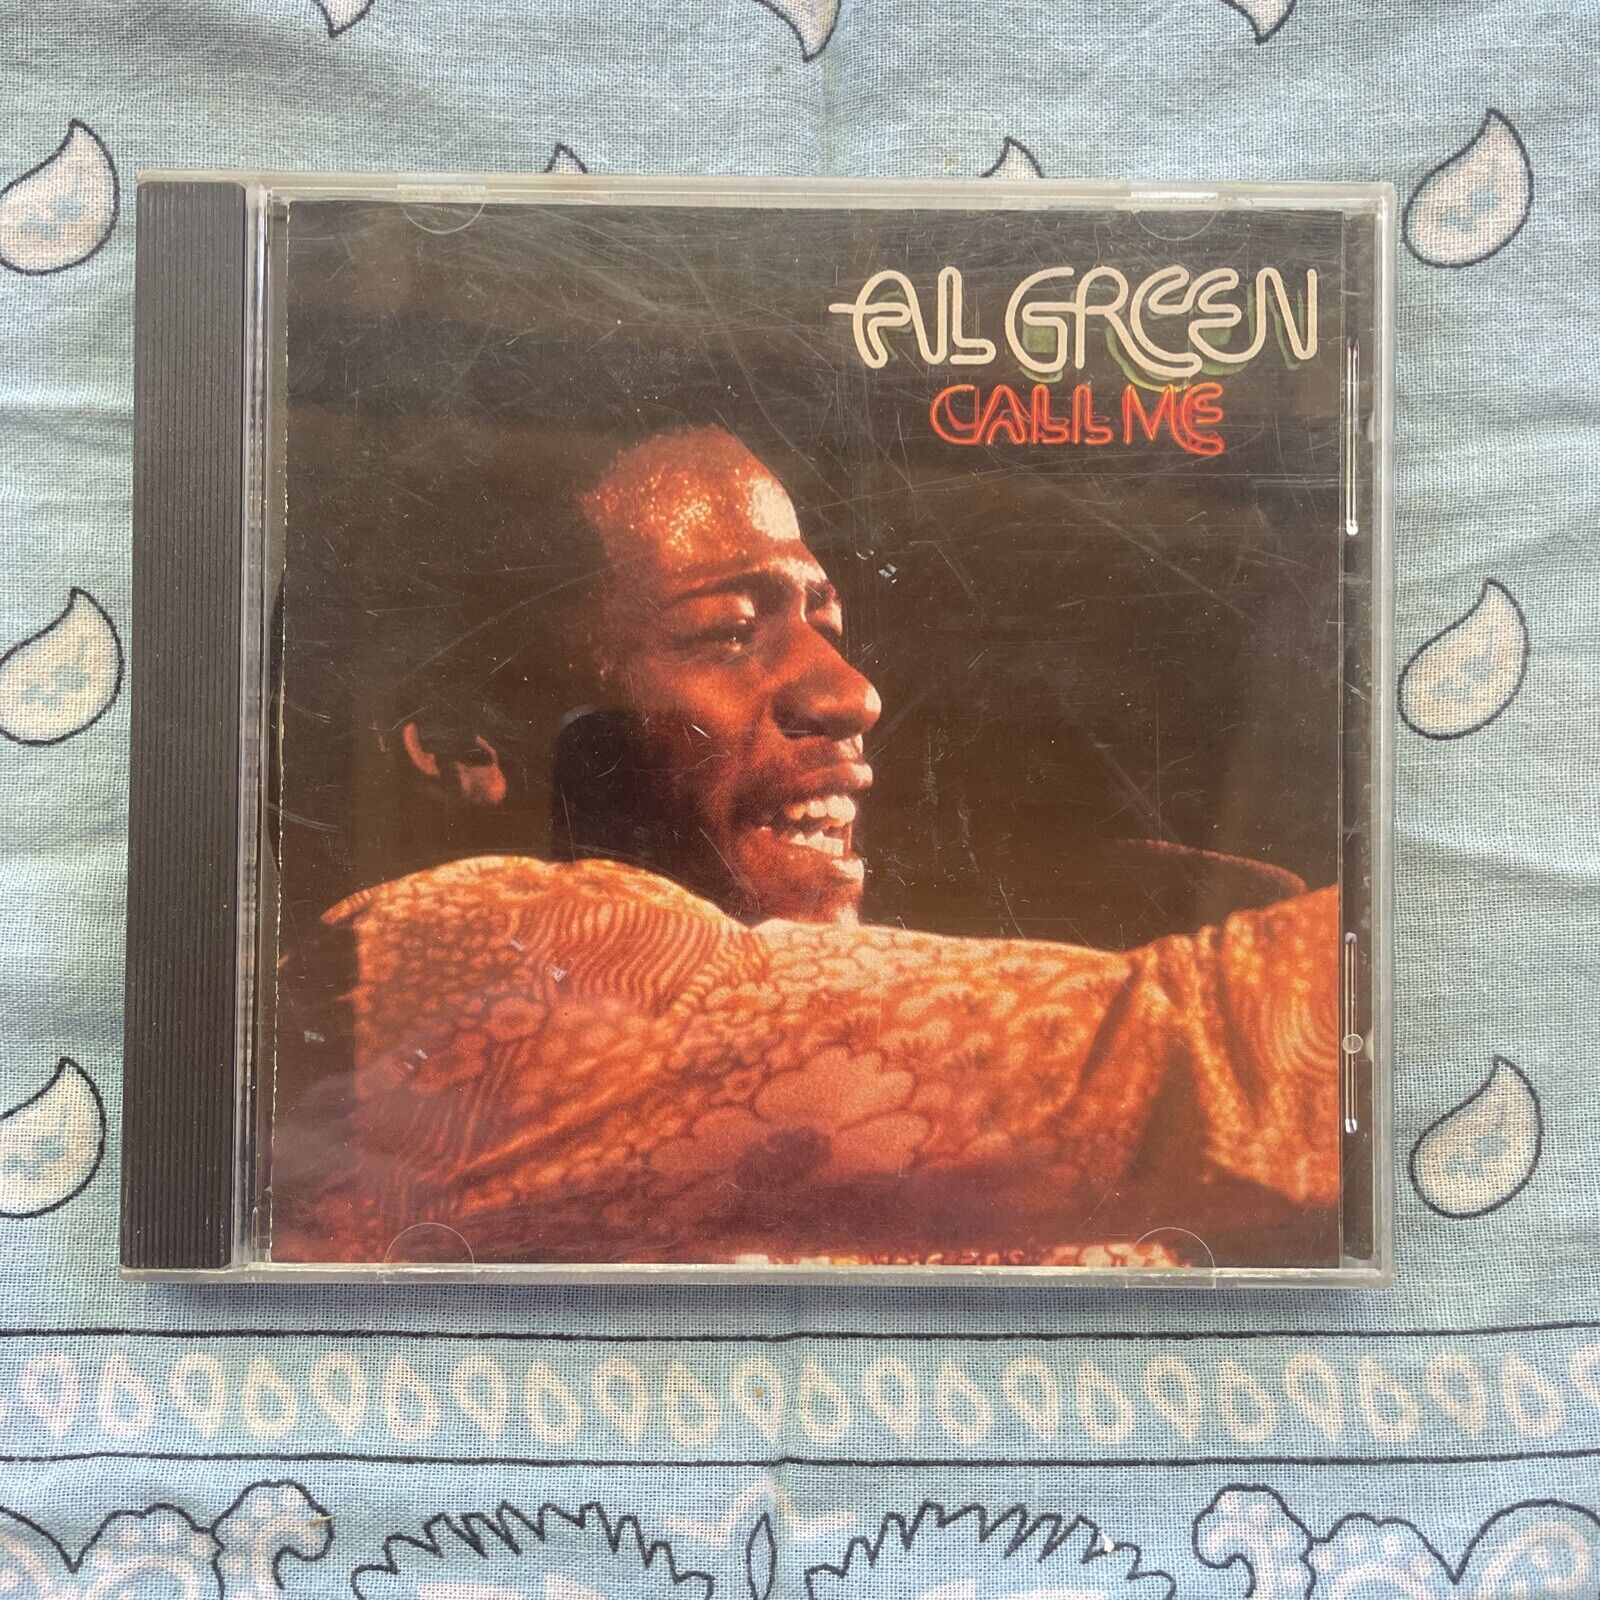 1994 Al Green "Call Me" CD 28538-2 (Hi Records)